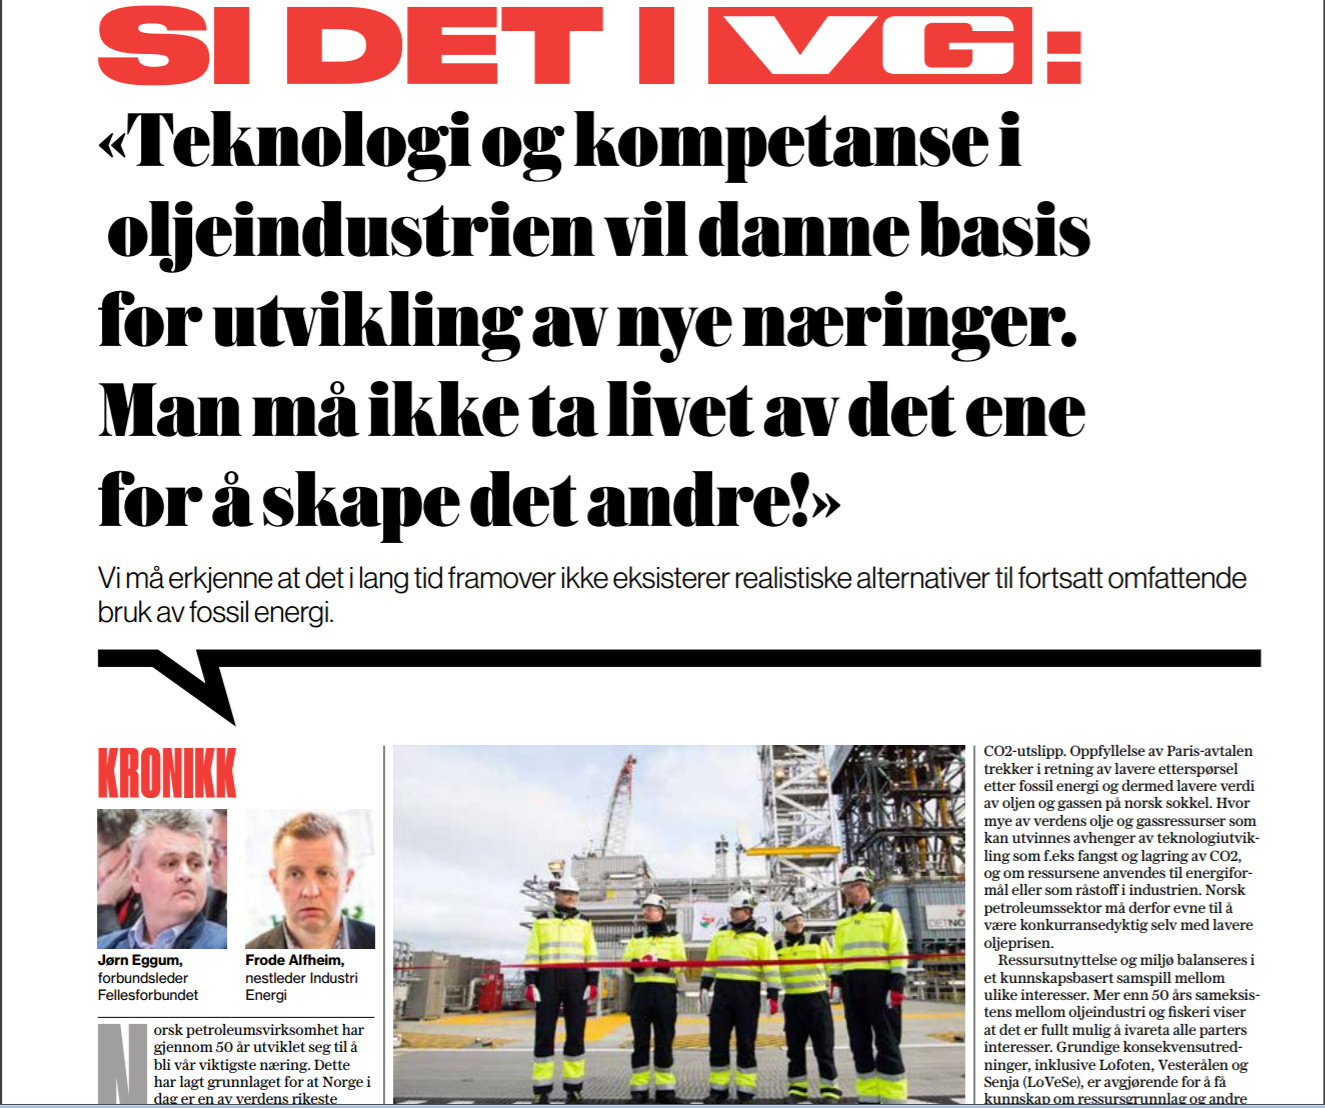 Olje og gassnæringen sikrer velferd til fellesskapet og flere hundre tusen arbeidsplasser, og vi trenger et Ap og et LO som er opptatt av arbeid, verdiskaping og velferd, skriver Frode Alfheim og Jørn Eggum i VG.